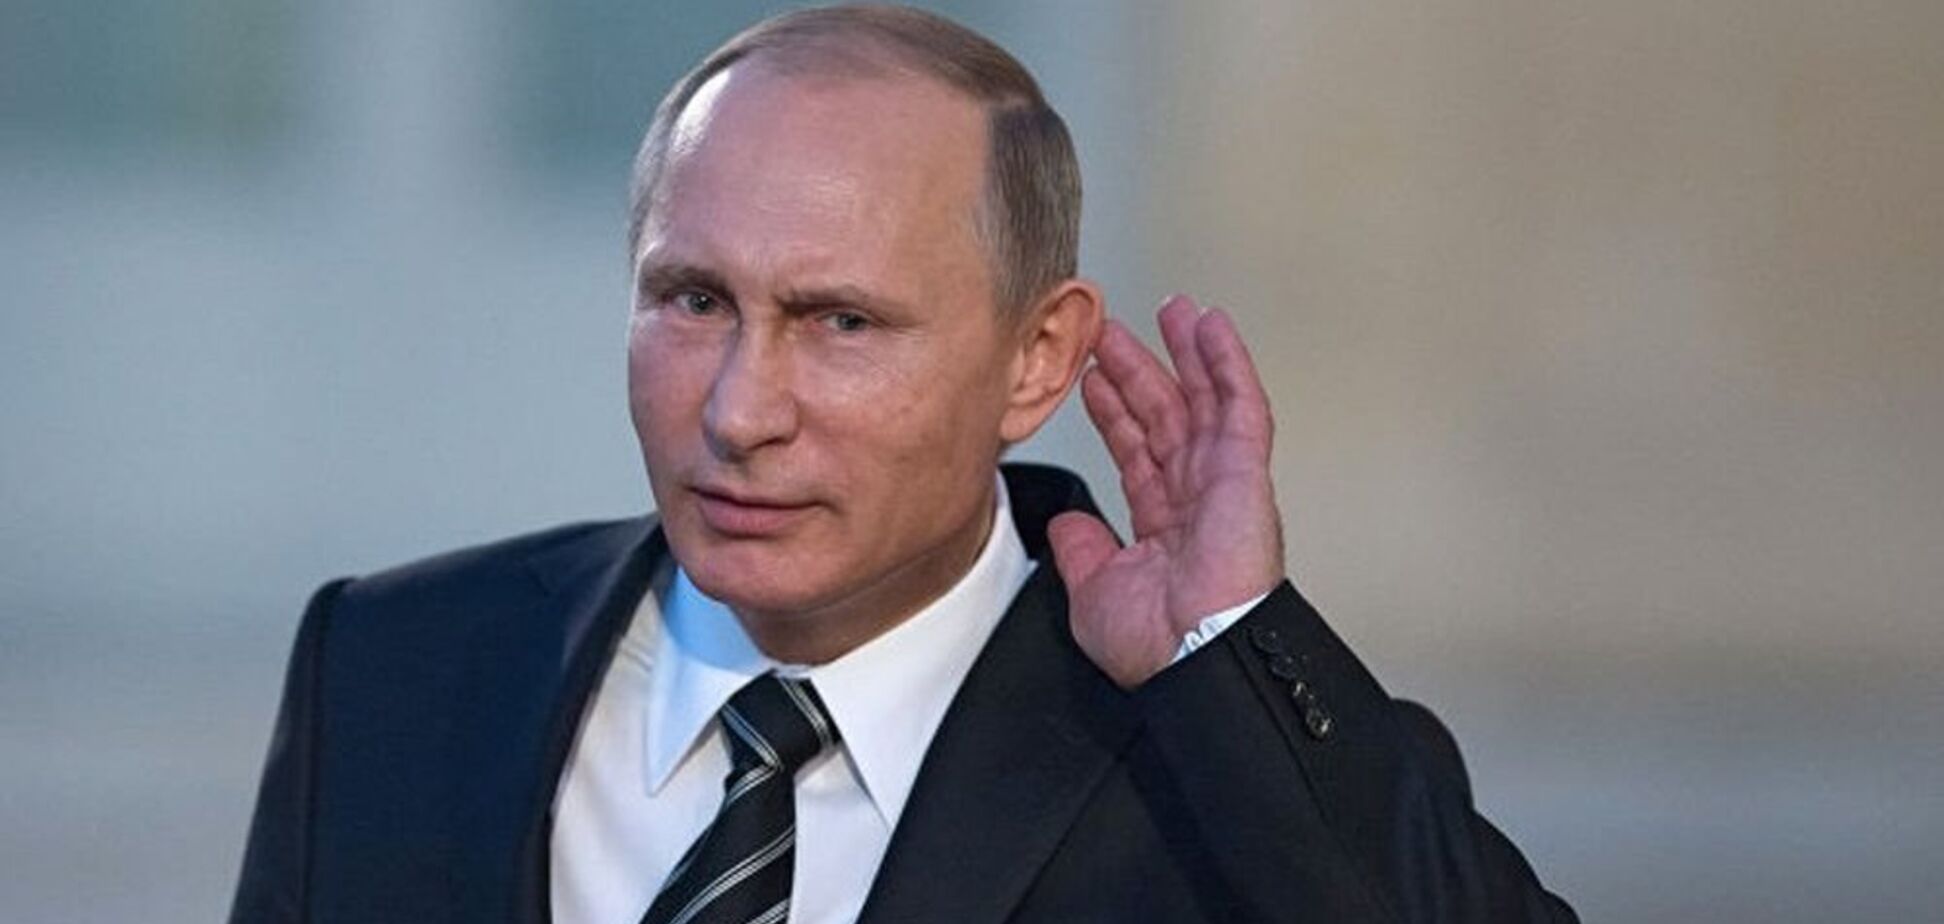 'З розуму зійшло': дивне відео з Путіним спантеличило мережу